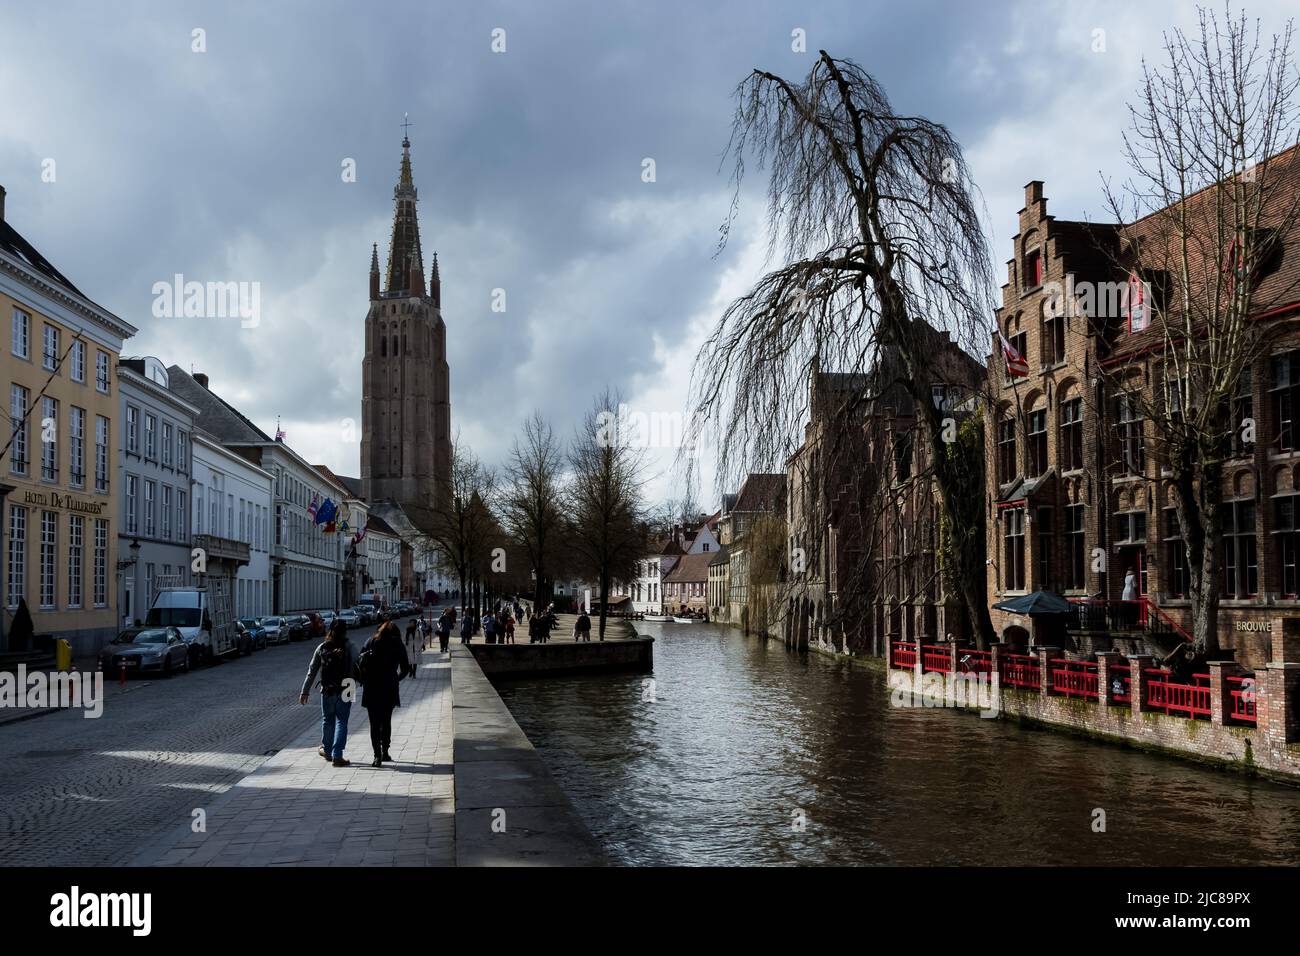 Dettaglio architettonico della città di Bruges, la capitale e la città più grande della provincia delle Fiandre Occidentali nel nord-ovest del Belgio Foto Stock